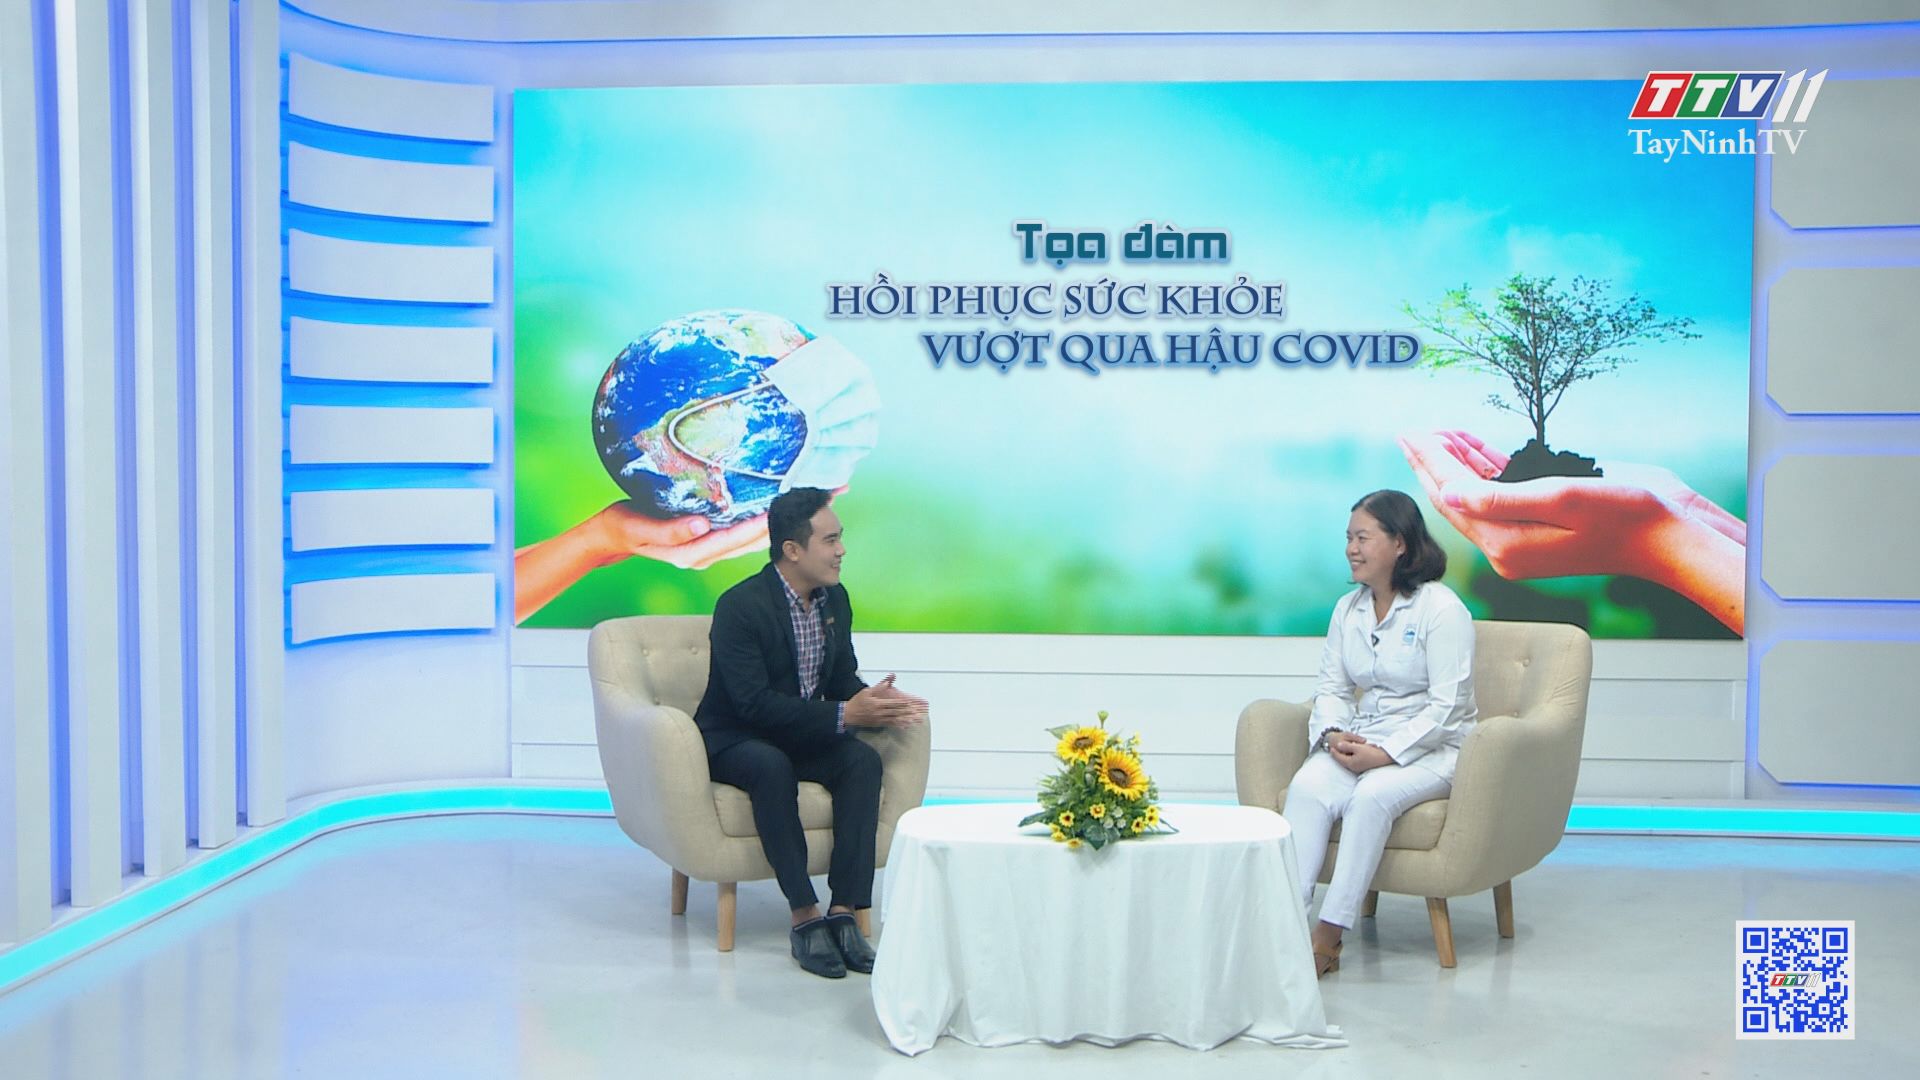 Tọa đàm hồi phục sức khỏe vượt qua hậu Covid | Thông tin dịch Covid-19 | TayNinhTV